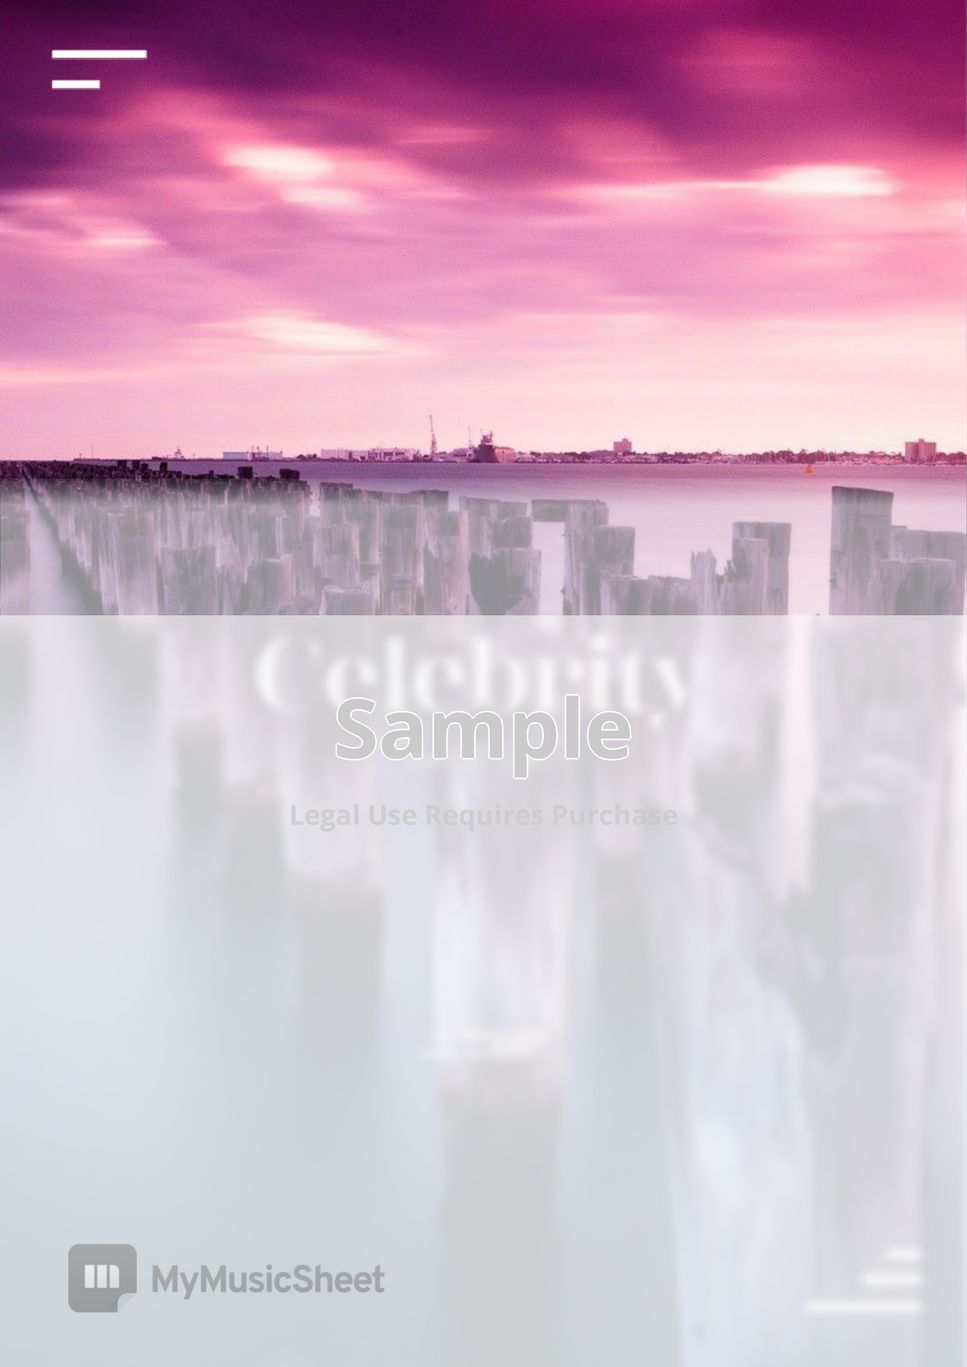 아이유 (IU) - Celebrity (쉬운 버전) (난이도 ★★☆☆☆) by PianoBox